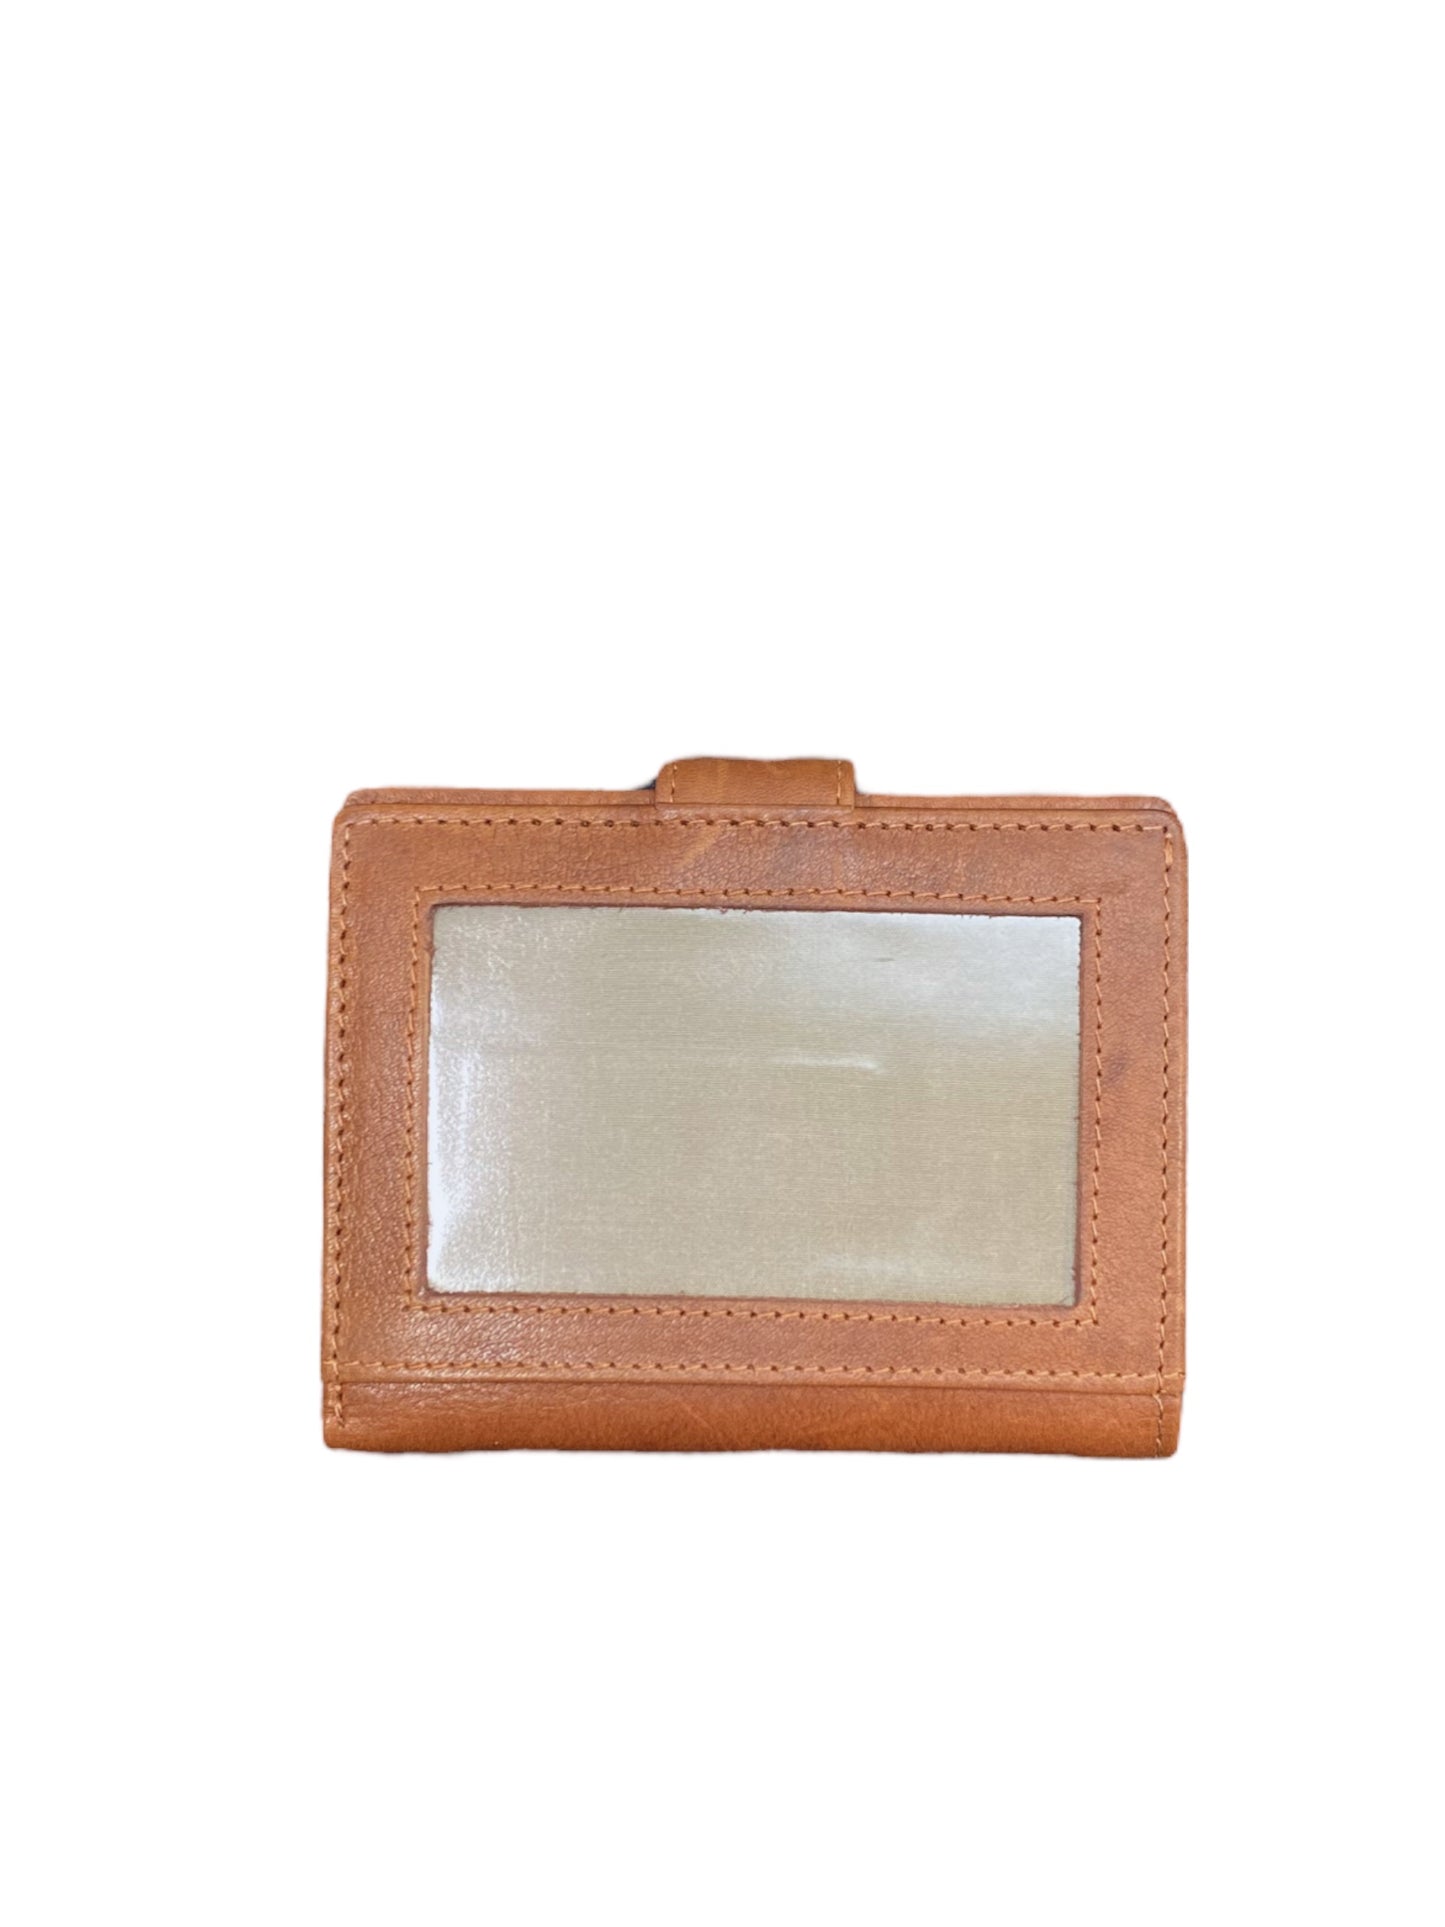 Pierre Cardin - Card Wallet - Black or Tan